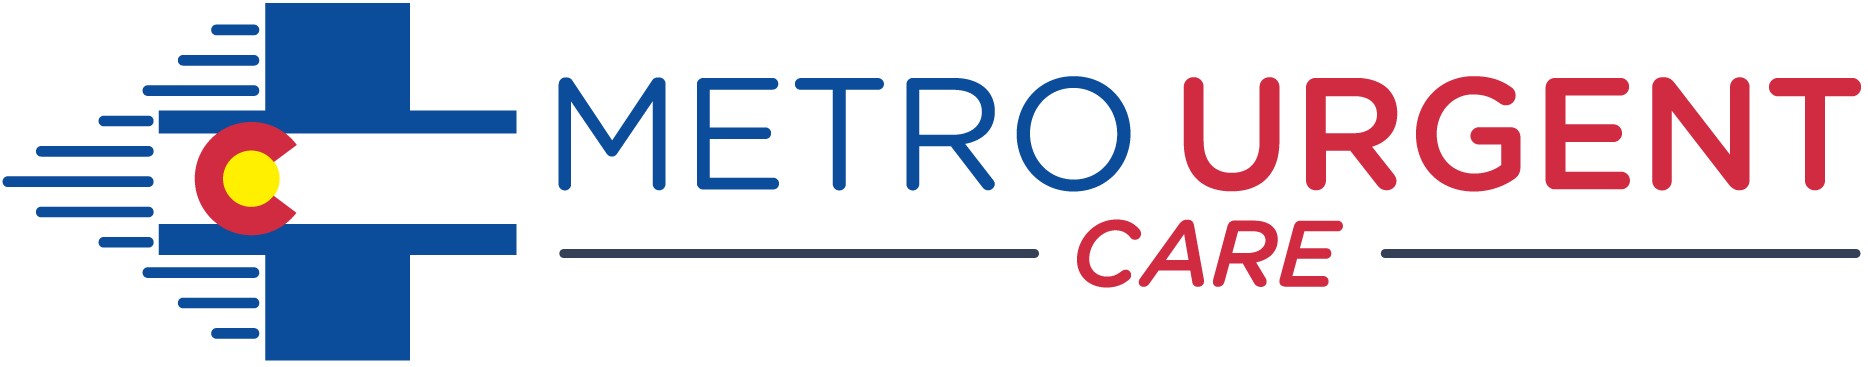 Metro Urgent Care Logo